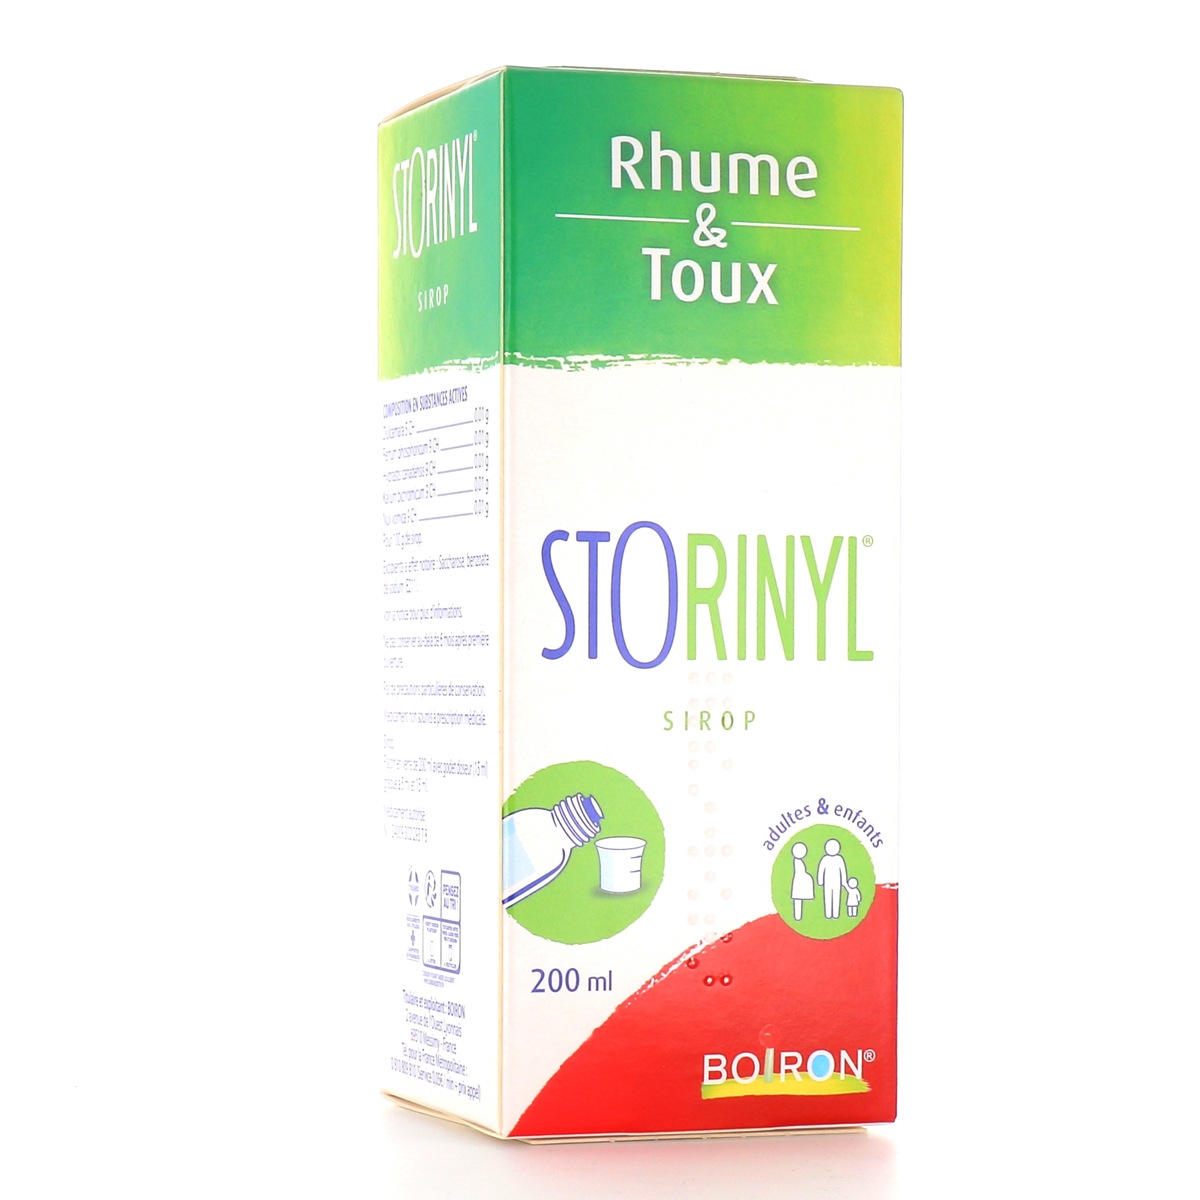 Boiron Storinyl sirop pour le rhume et la toux - Médicament homéopathique